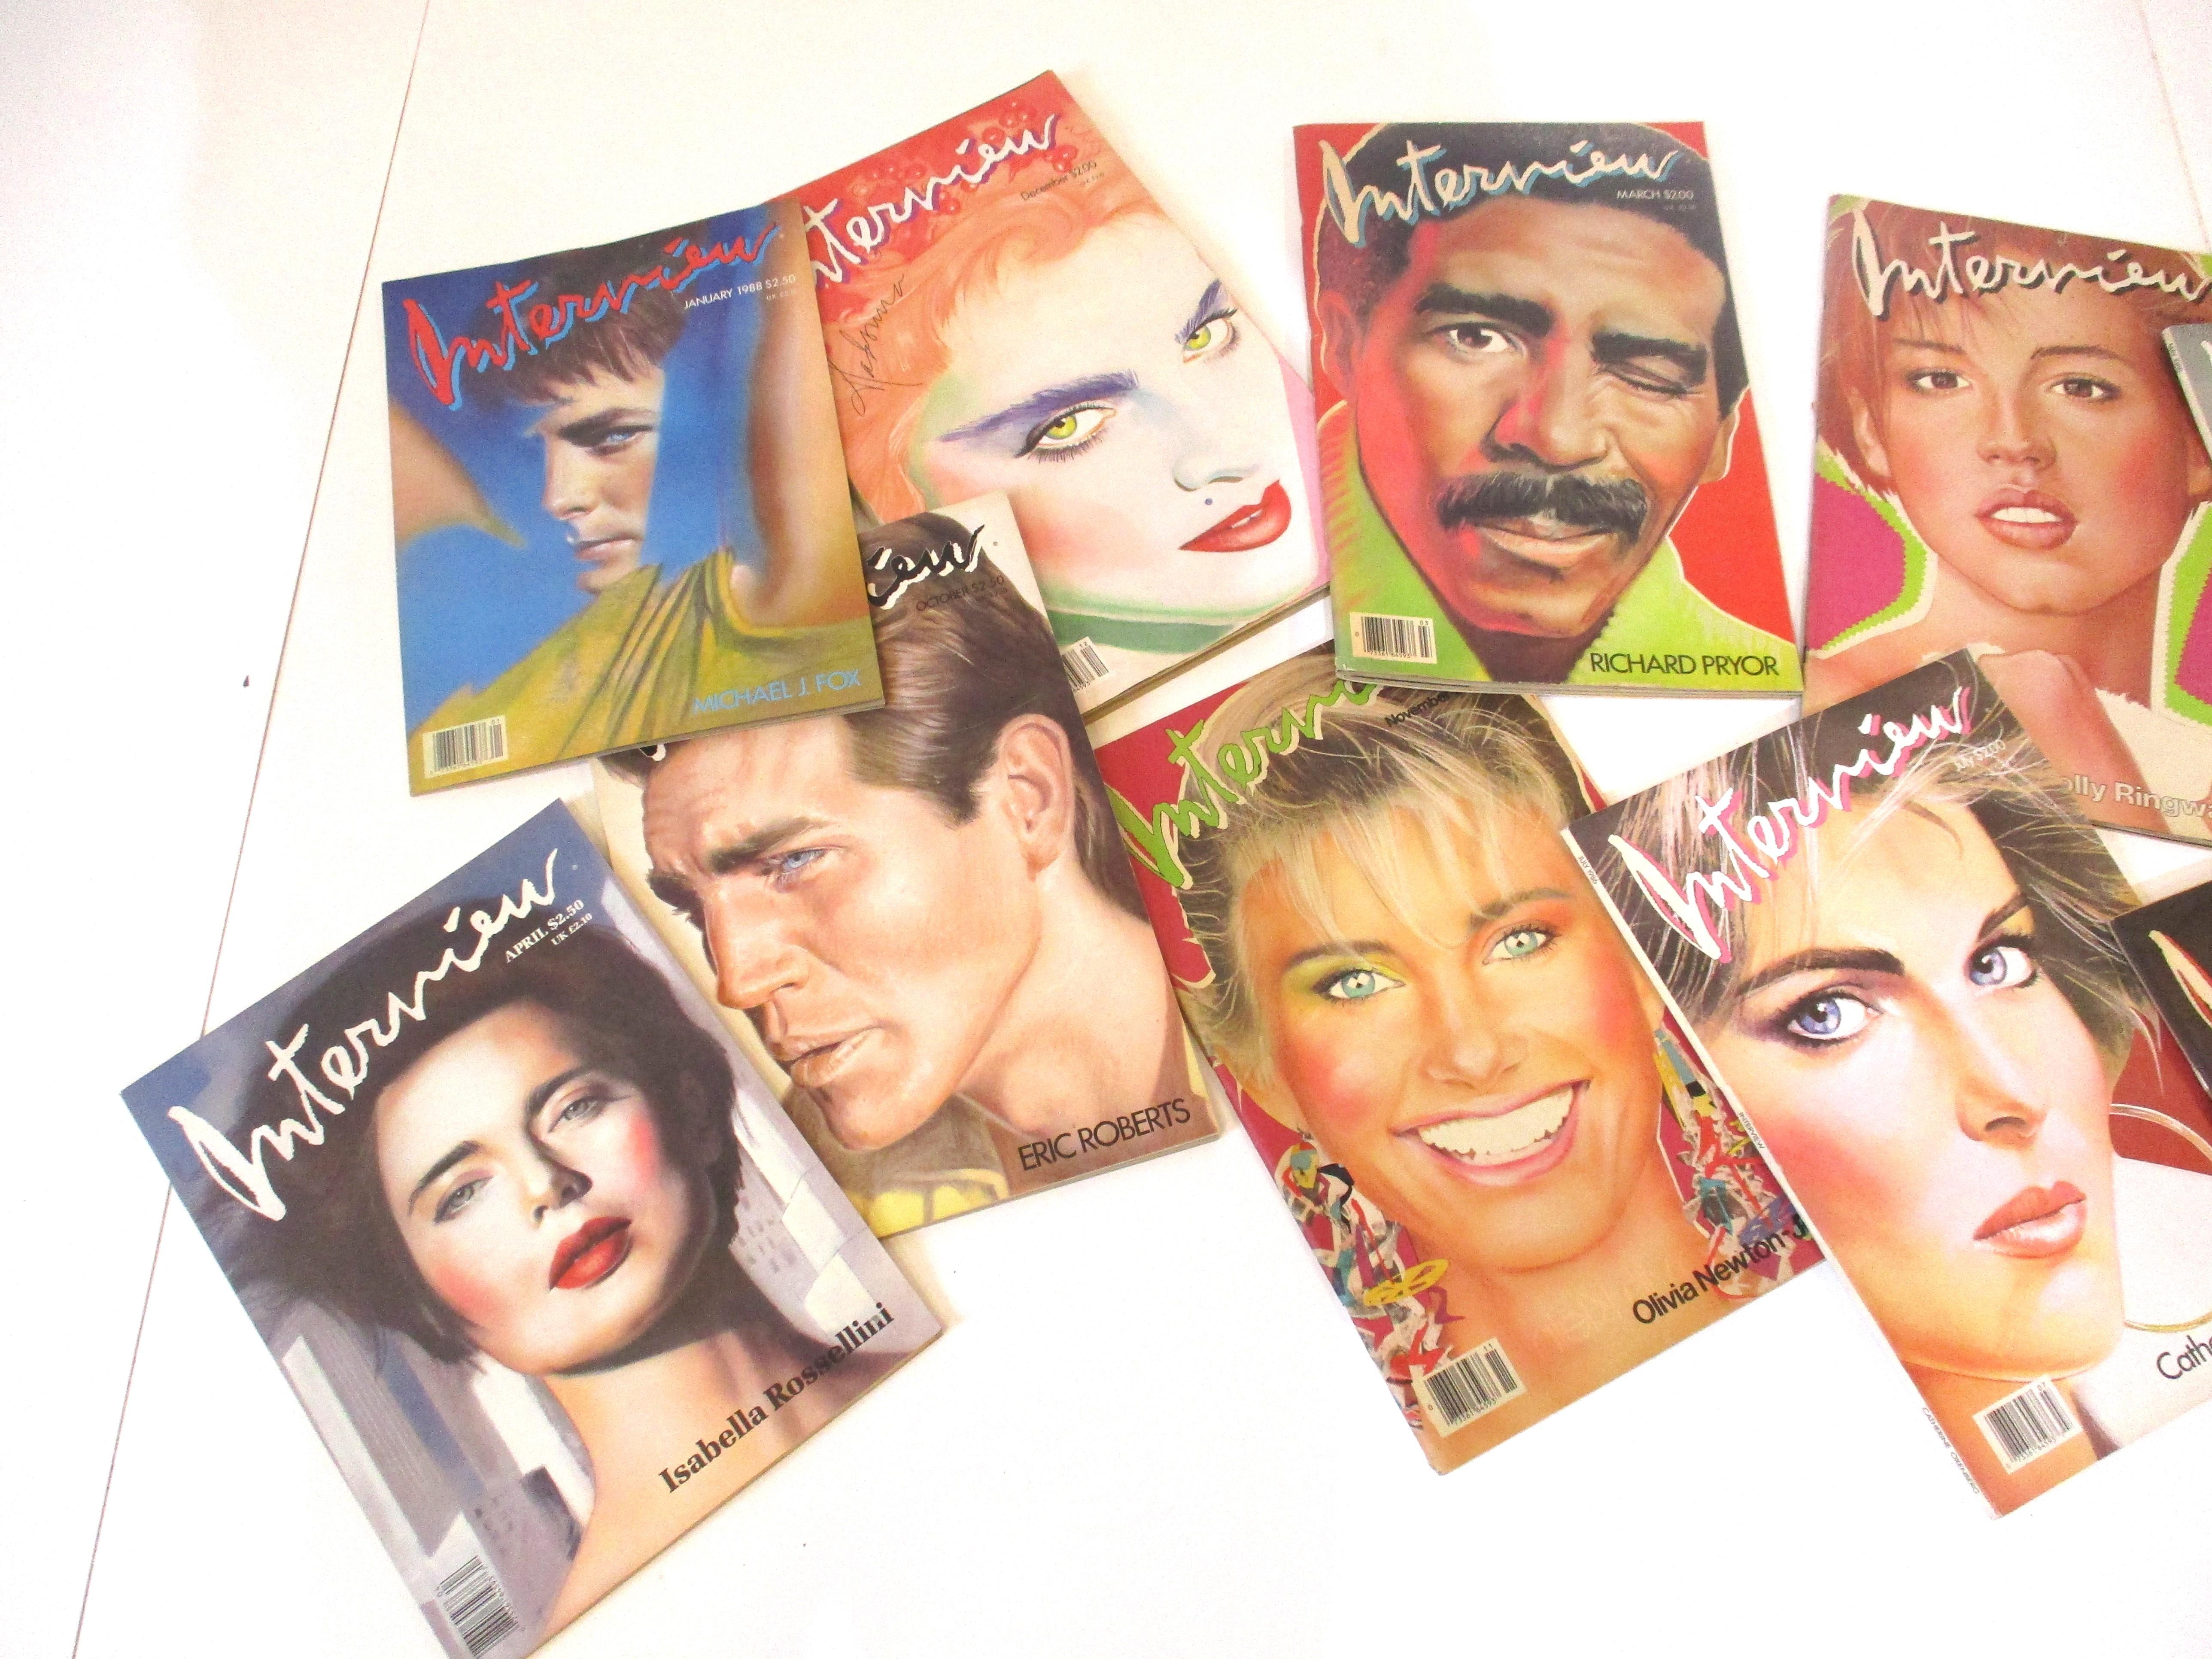 Eine Sammlung von dreizehn kultigen Interview-Magazinen, die von Andy Warhol herausgegeben wurden, mit vielen Porträt-Covern des Künstlers Richard Bernstein, die eine Geschichte der Kunst, der Mode, der Fotografie und der Geschichten aus der